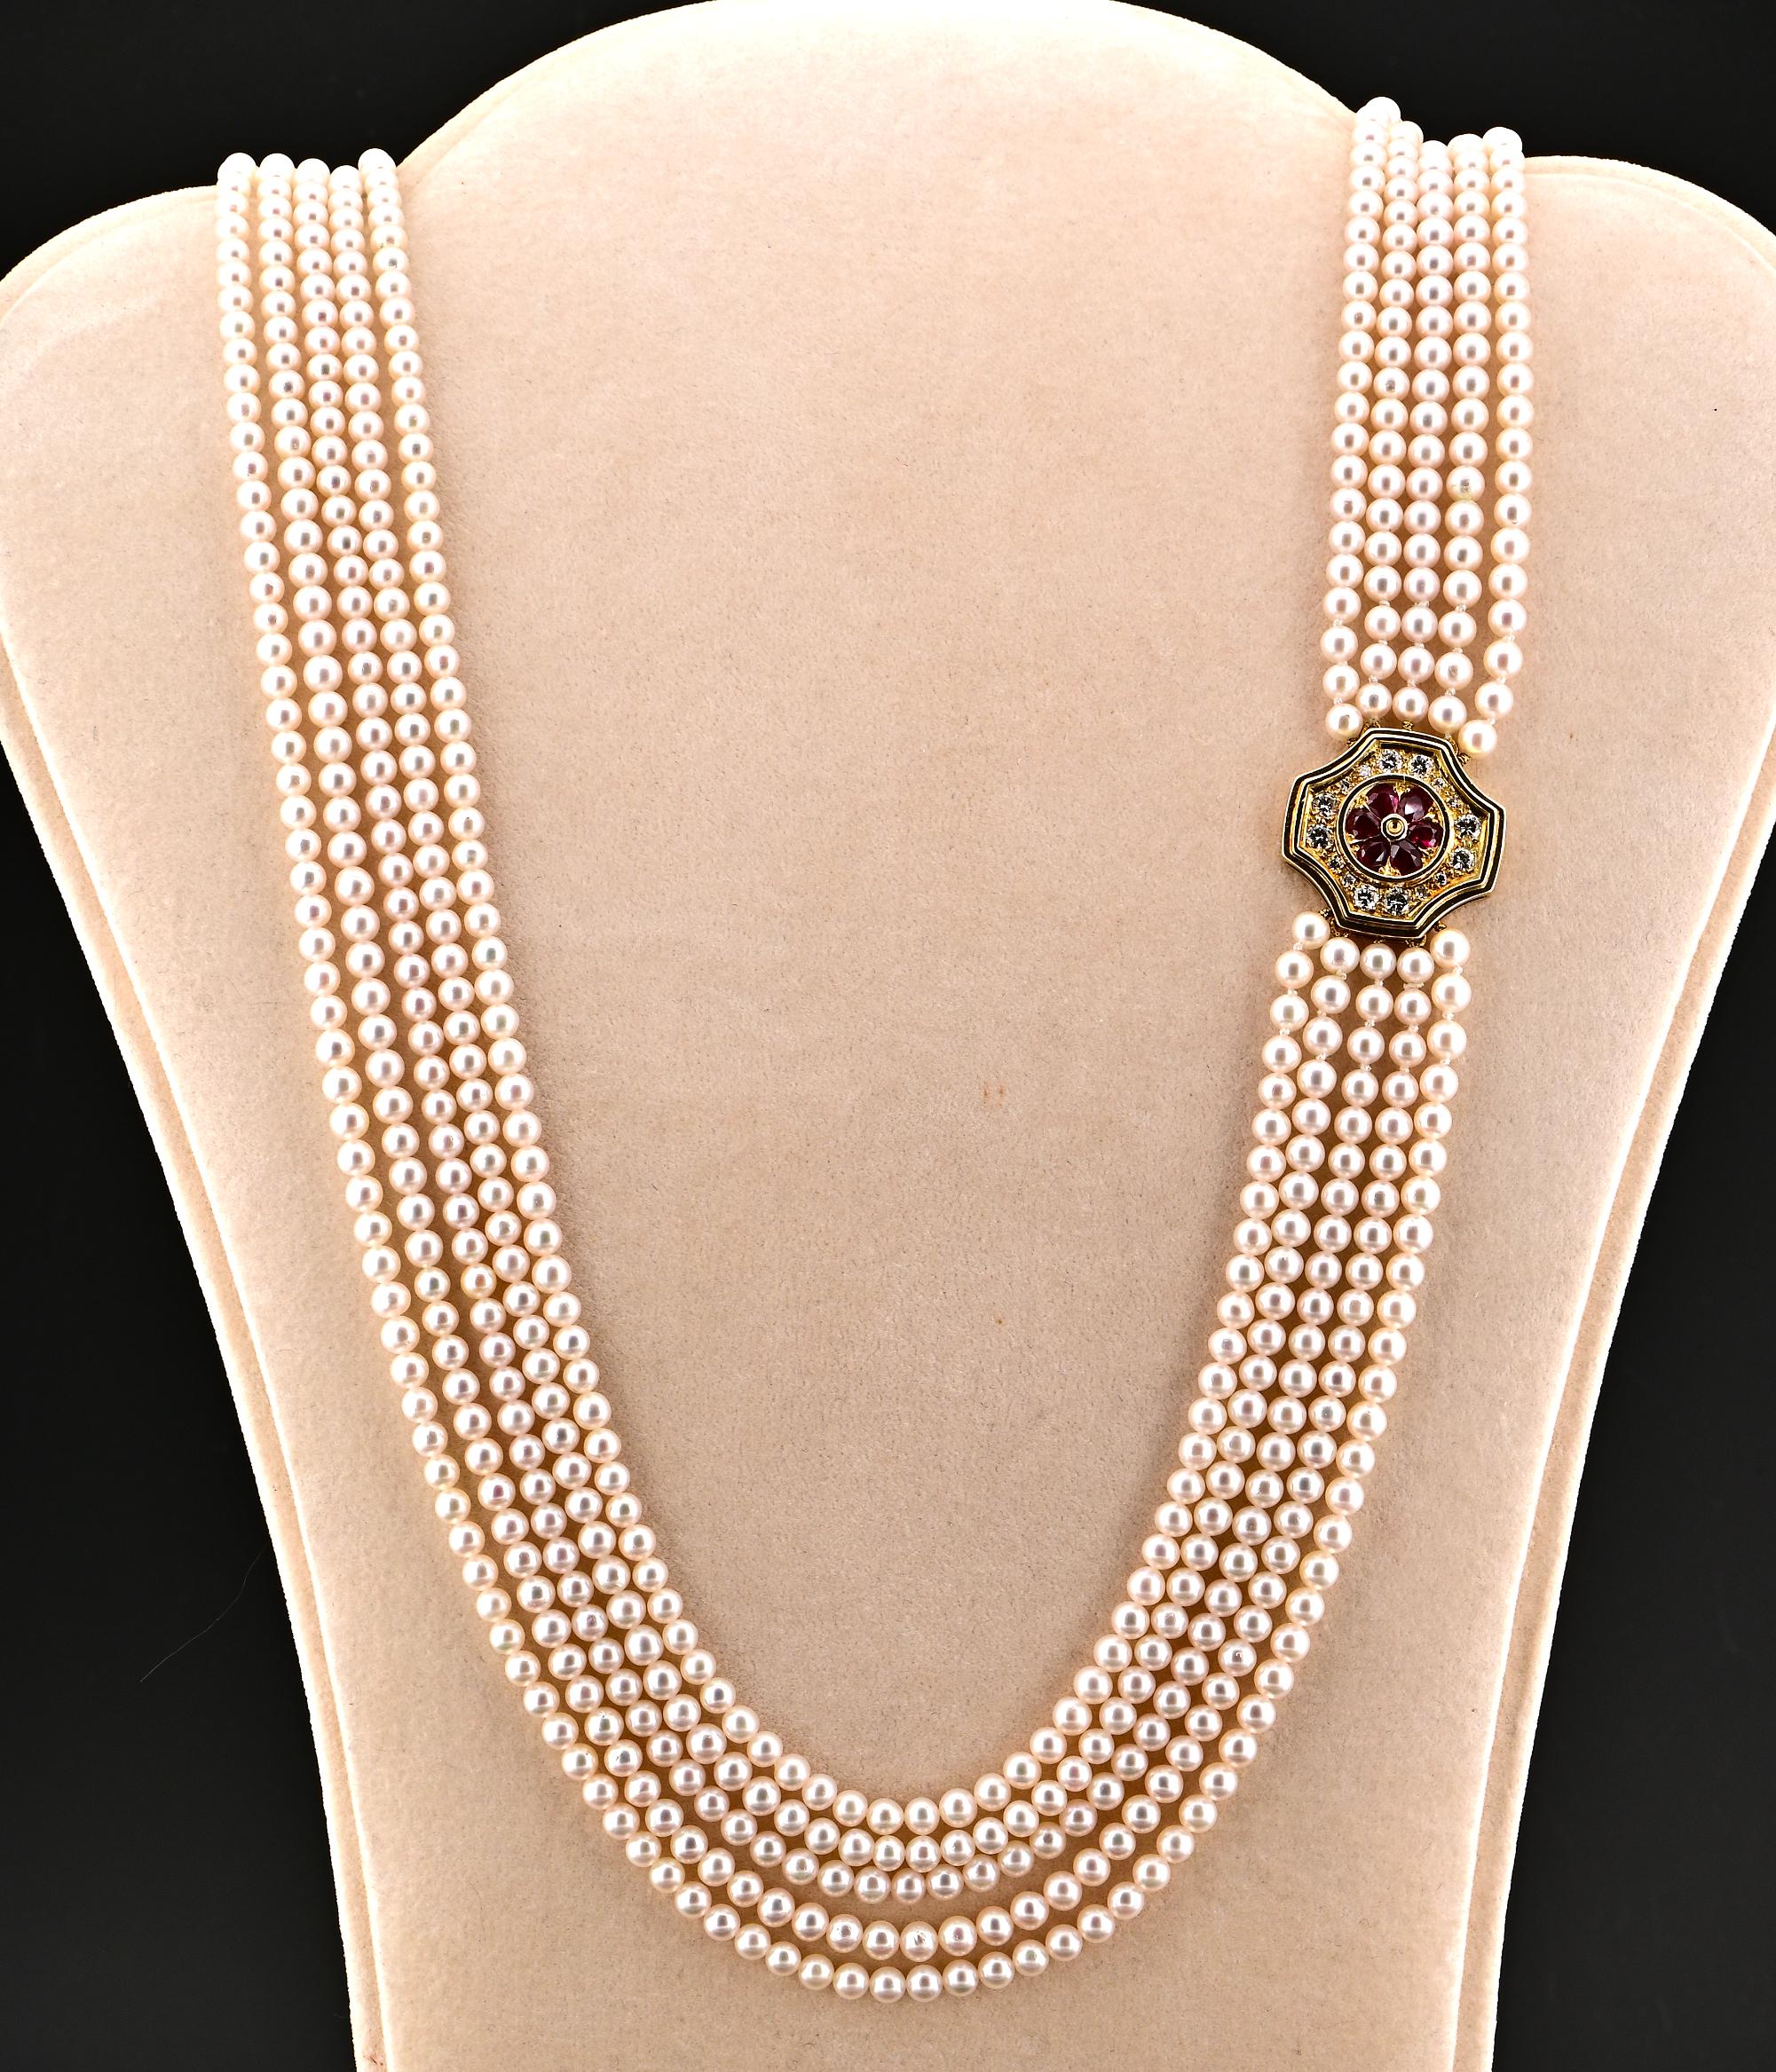 Pleins feux sur l'Elegance
Ce costume vintage unique en perles, rubis et diamants est l'incarnation de l'élégance intemporelle. Les pièces en or 18 carats sont faites à la main et portent le poinçon anglais de Londres 1977.
Le costume se compose